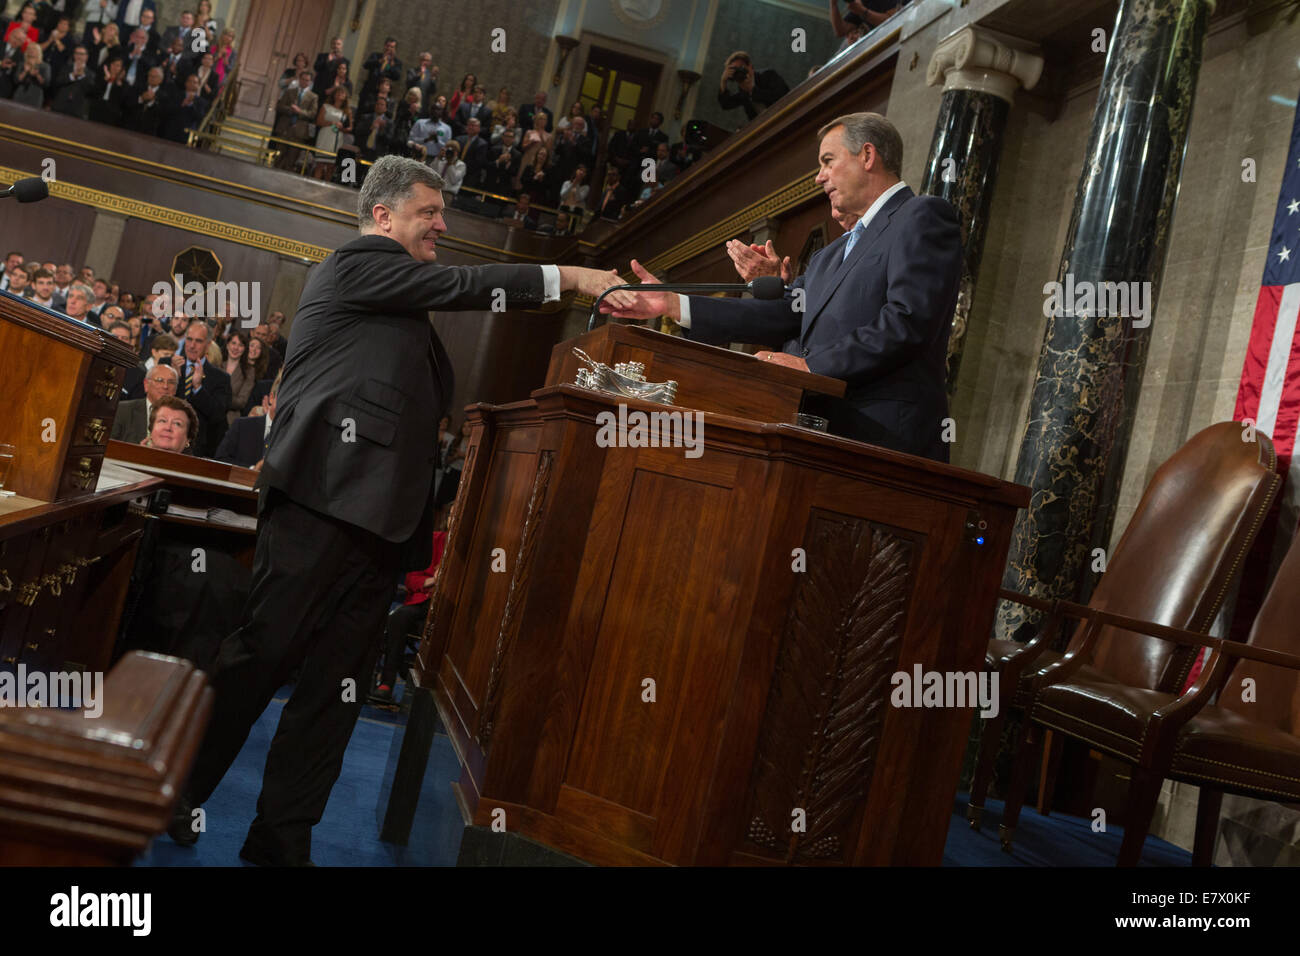 Ukrainian President Petro Poroshenko shakes hands with  Speaker of the House John Boehner before addressing a joint session of the U.S. Congress September 18, 2014 in Washington, DC. Stock Photo